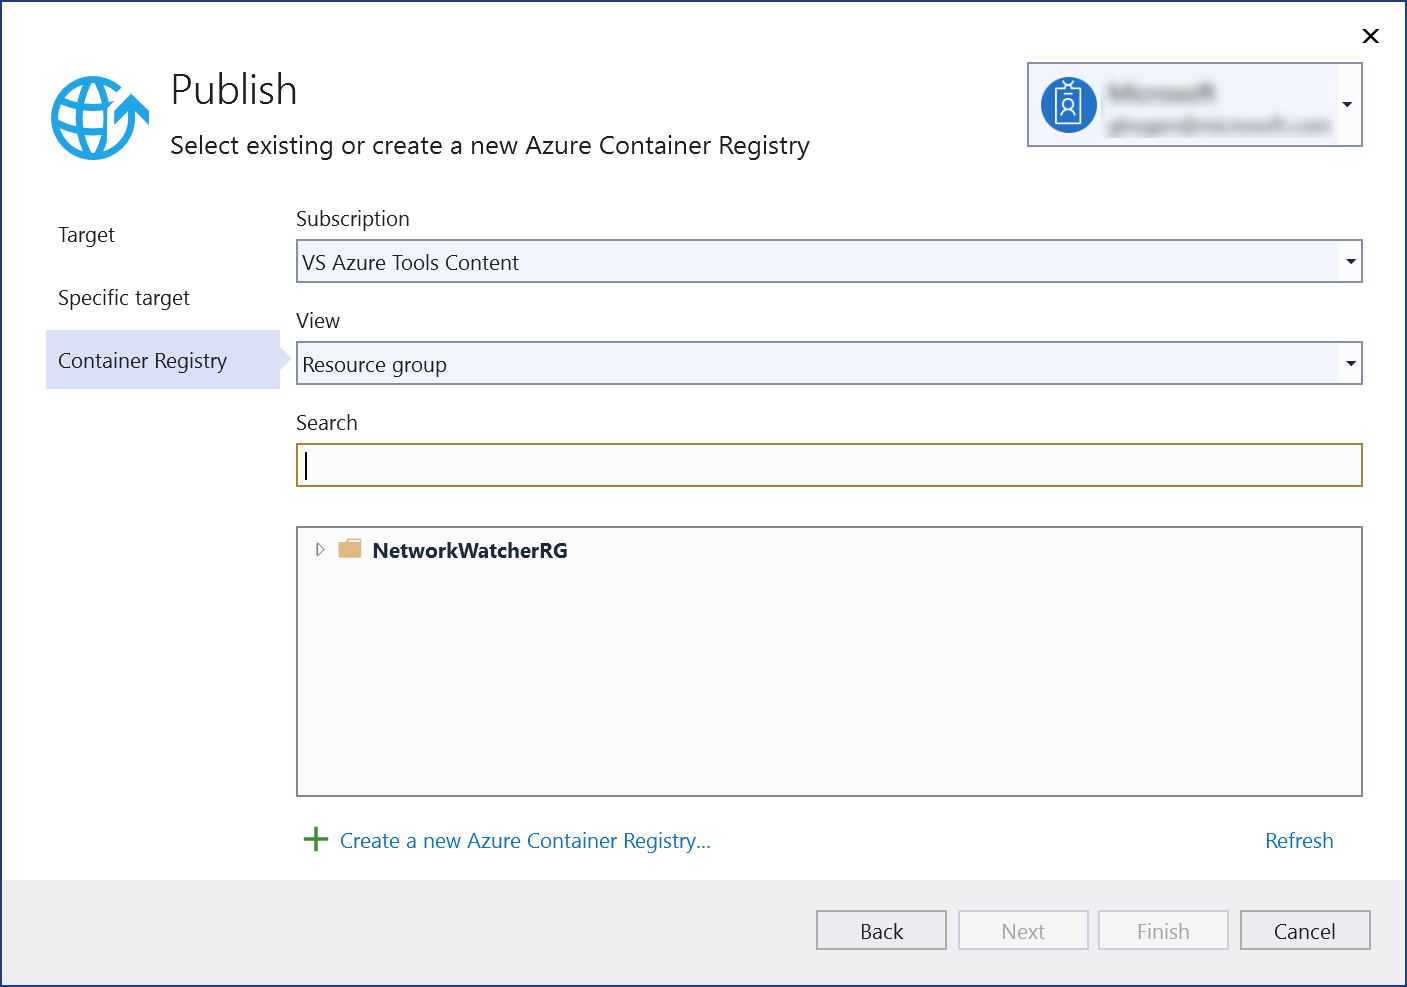 “‘发布’对话框 - 选择‘新建 Azure 容器注册表’”的屏幕截图。